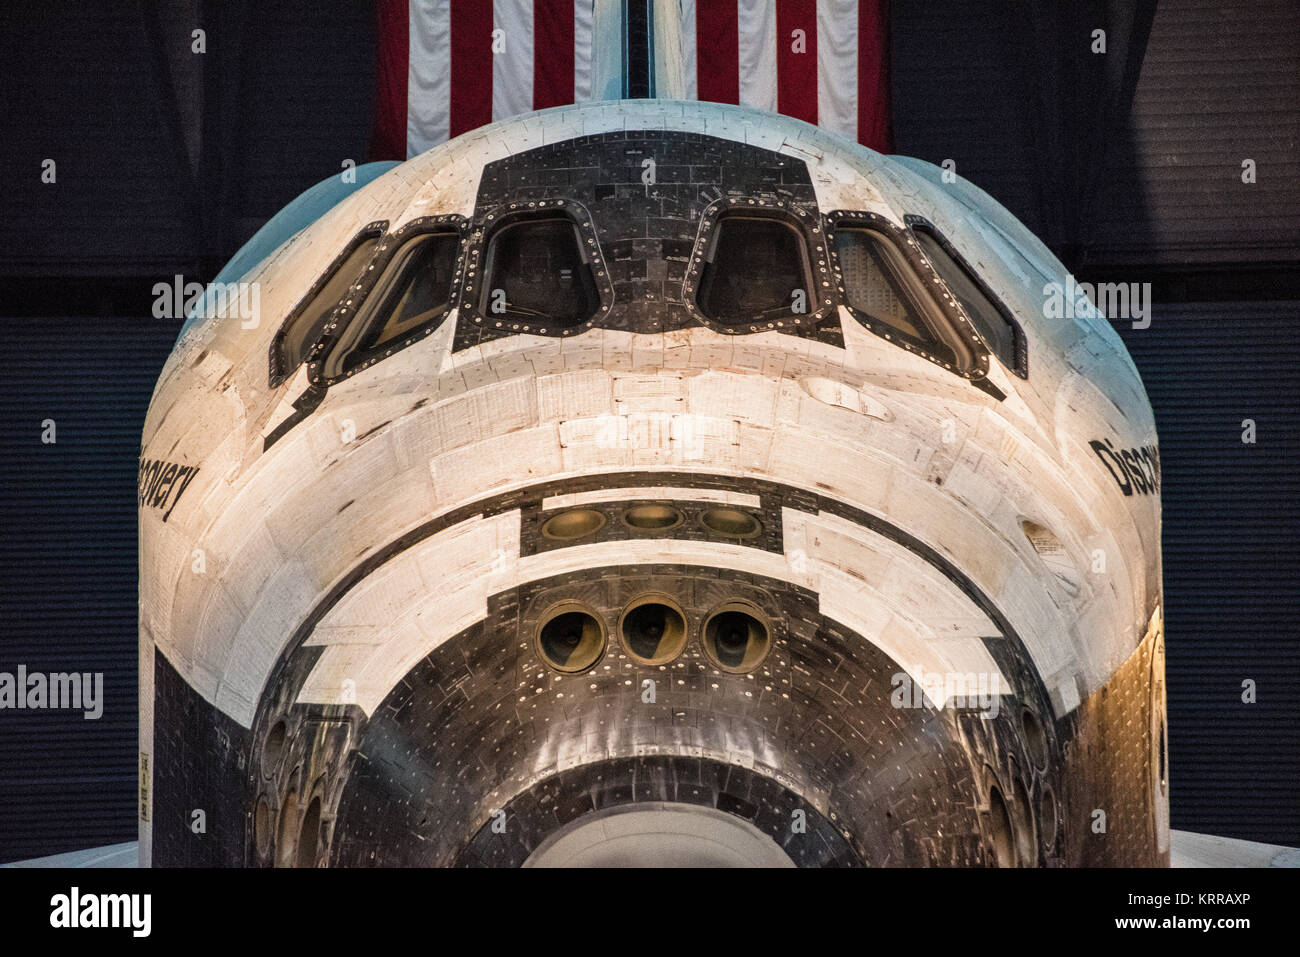 DULLES, Virginia, USA – das Space Shuttle Discovery, ein Symbol der menschlichen Weltraumforschung, ist im Steven F. Udvar-Hazy Center, Teil des Smithsonian National Air and Space Museum, zu sehen. Dieser Orbiter, der 39 Missionen über 27 Jahre geflogen hat, dient als bedeutendes Artefakt des US-Weltraumshuttle-Programms und verkörpert die Geschichte und Fortschritte in der Weltraumtechnologie. Stockfoto